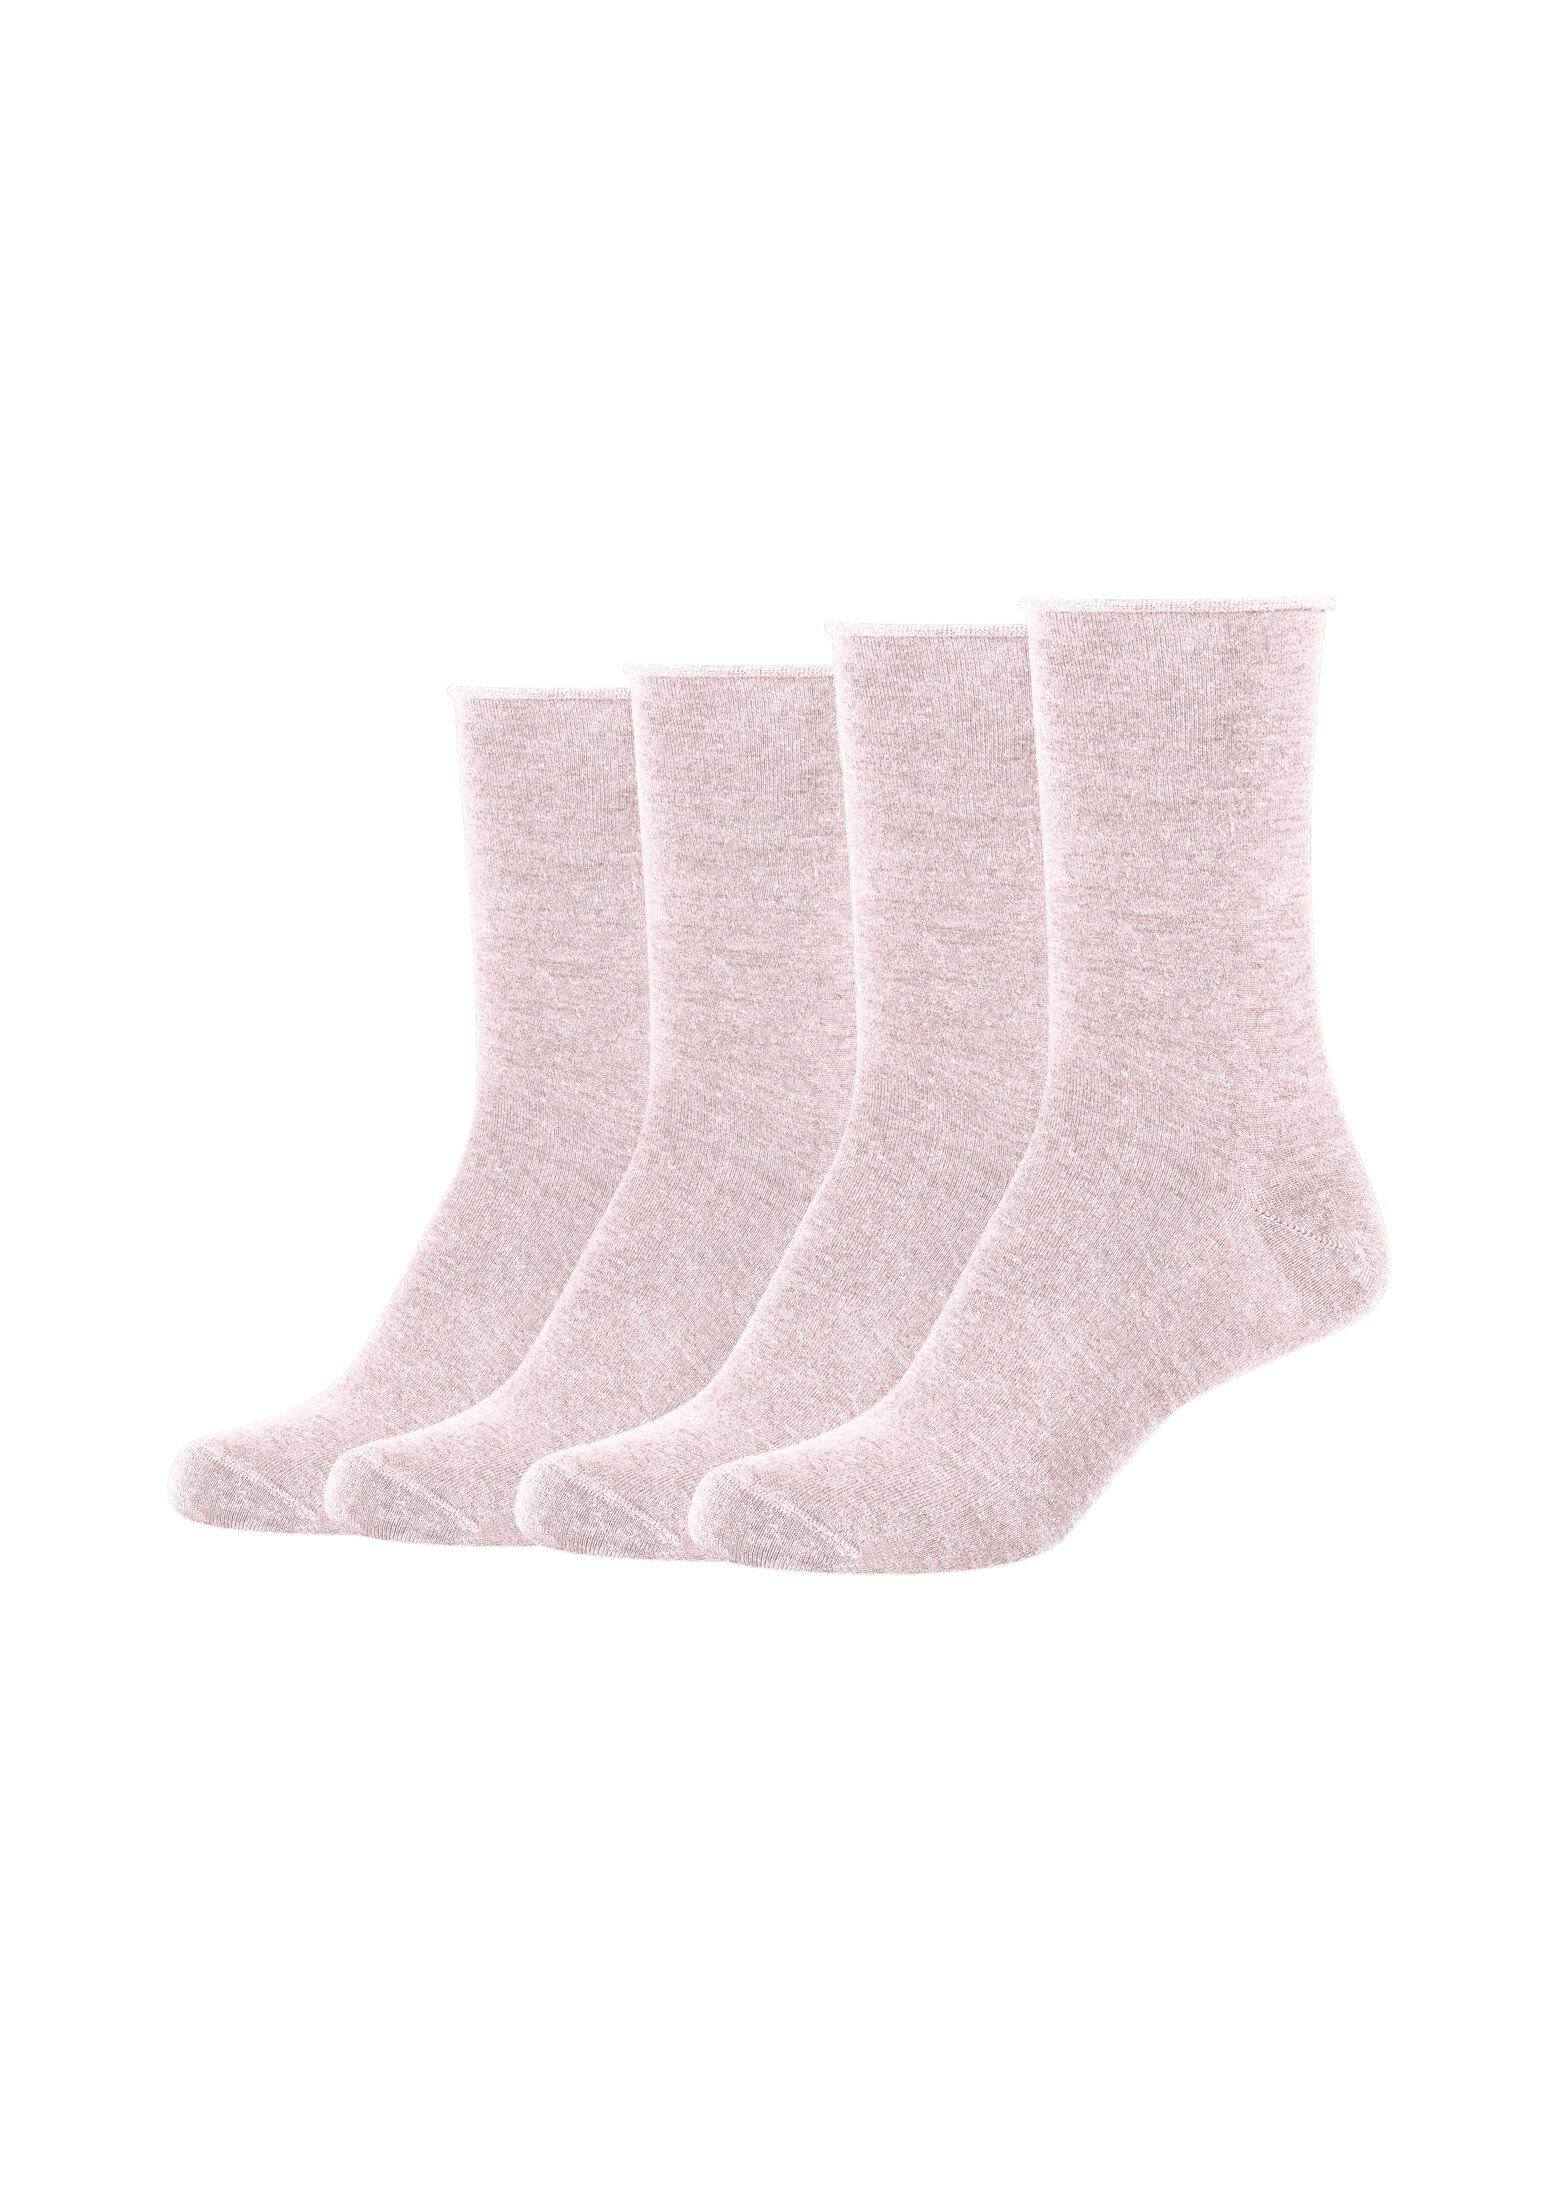 s.Oliver Socken Socken 4er Pack rosé melange